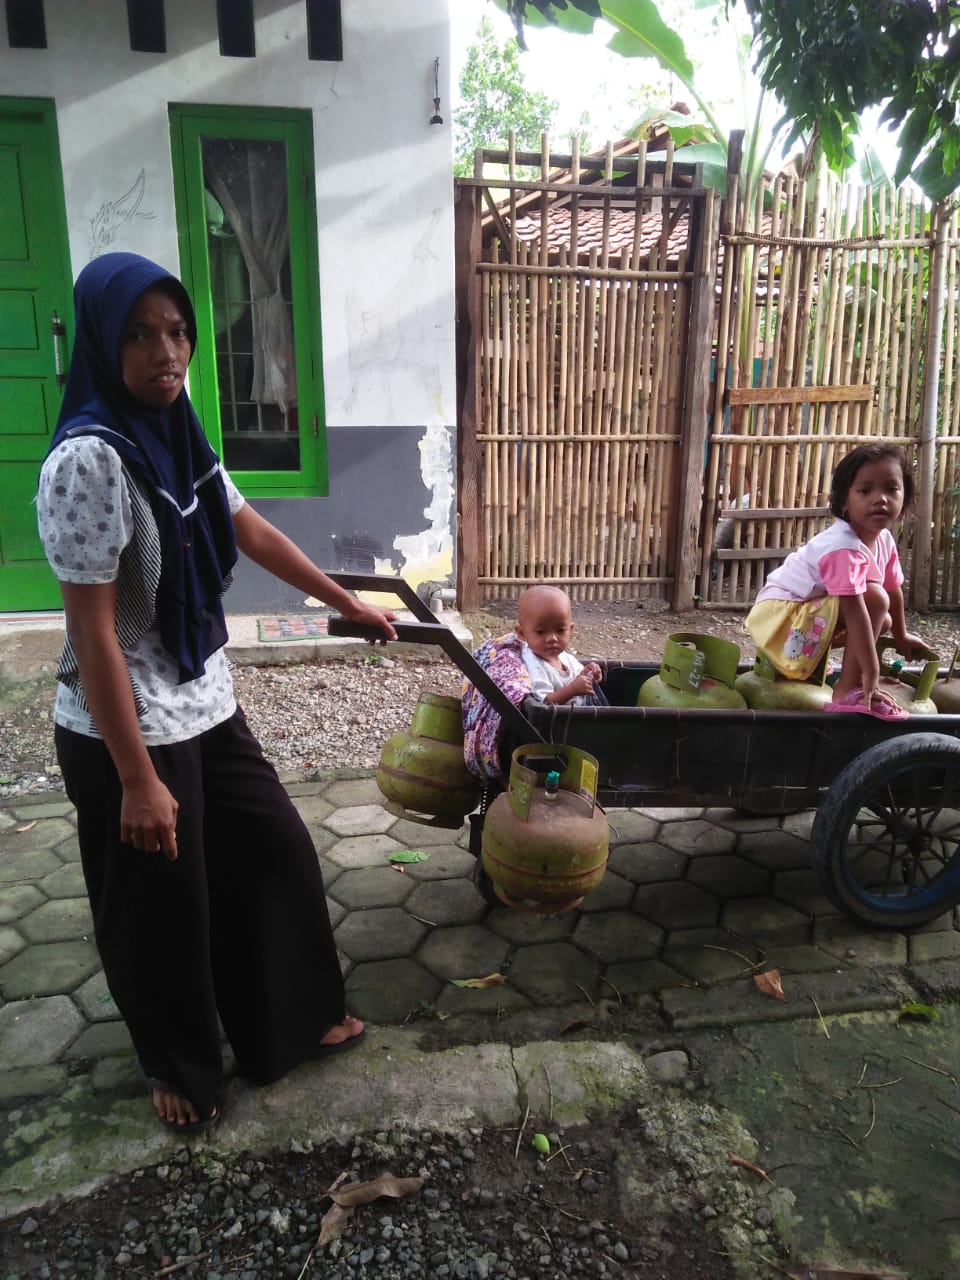 Sambung Kebutuhan Hidup, Ibu di Tegal Jual Gas Sambil Bawa Dua Anaknya